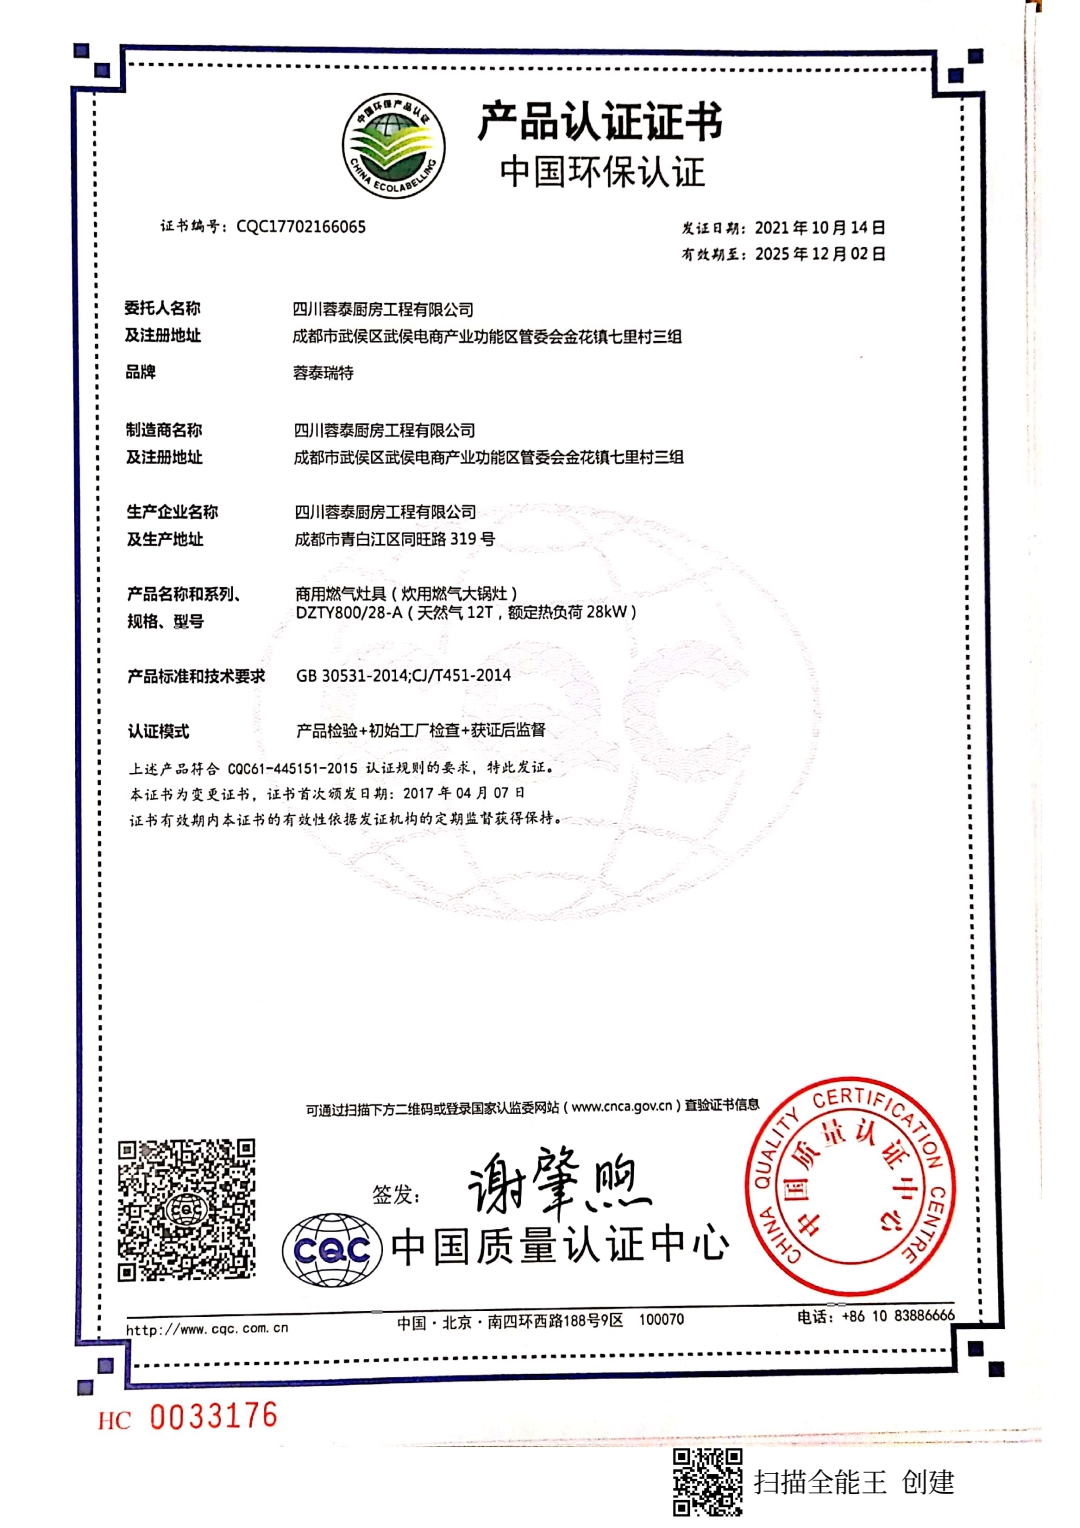 恭喜四川蓉泰厨房工程有限公司顺利通过审核取得中国环保产品认证证书